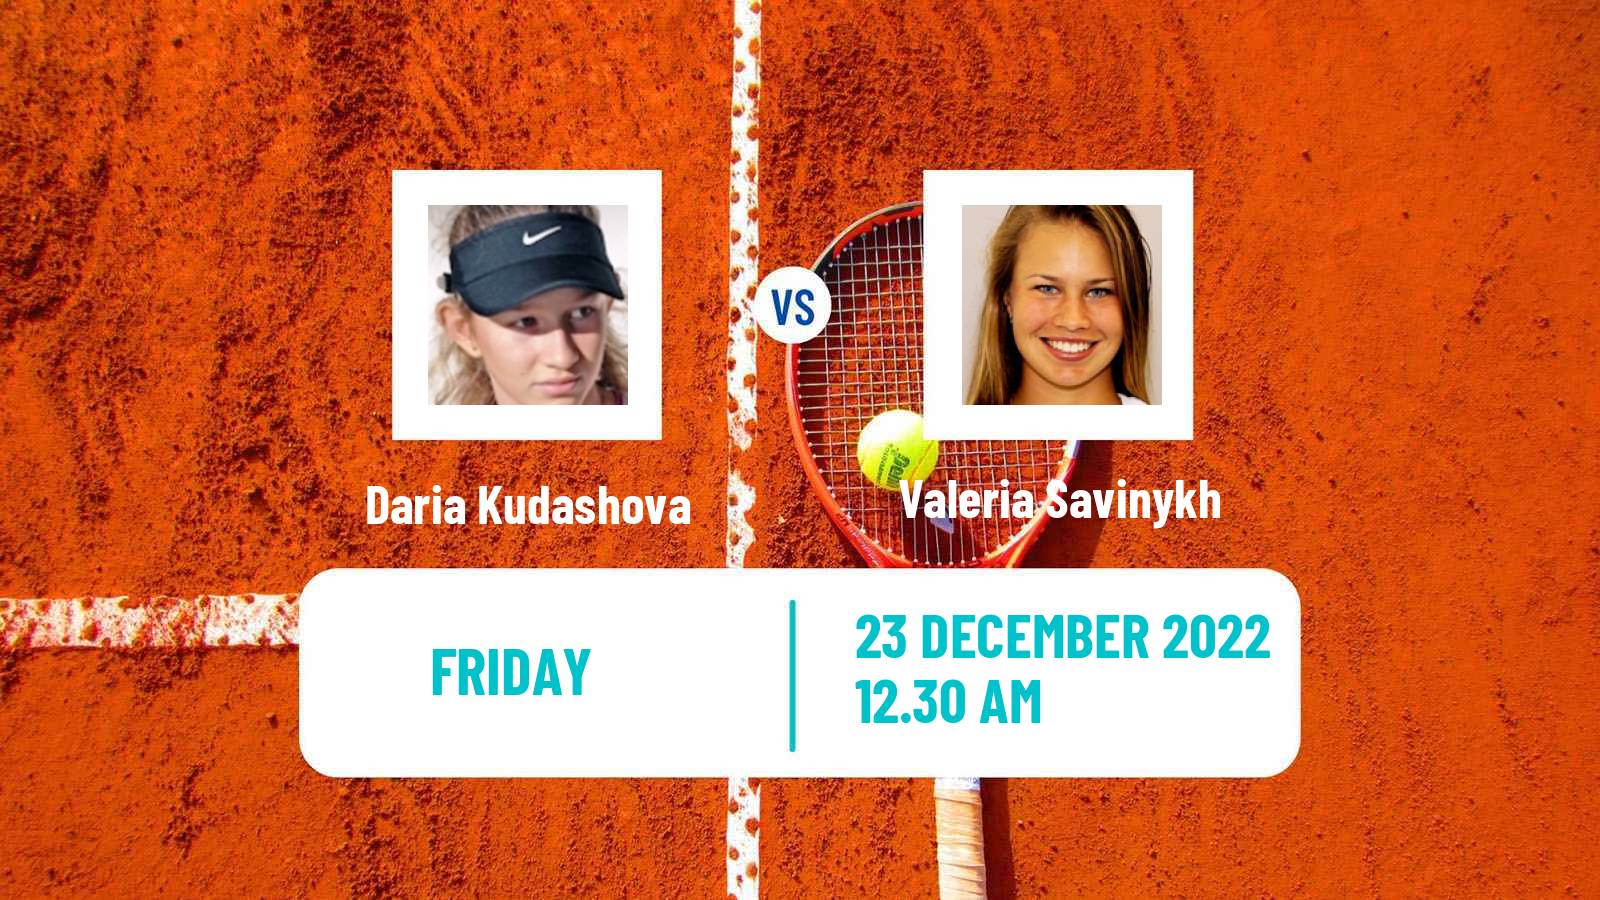 Tennis ITF Tournaments Daria Kudashova - Valeria Savinykh